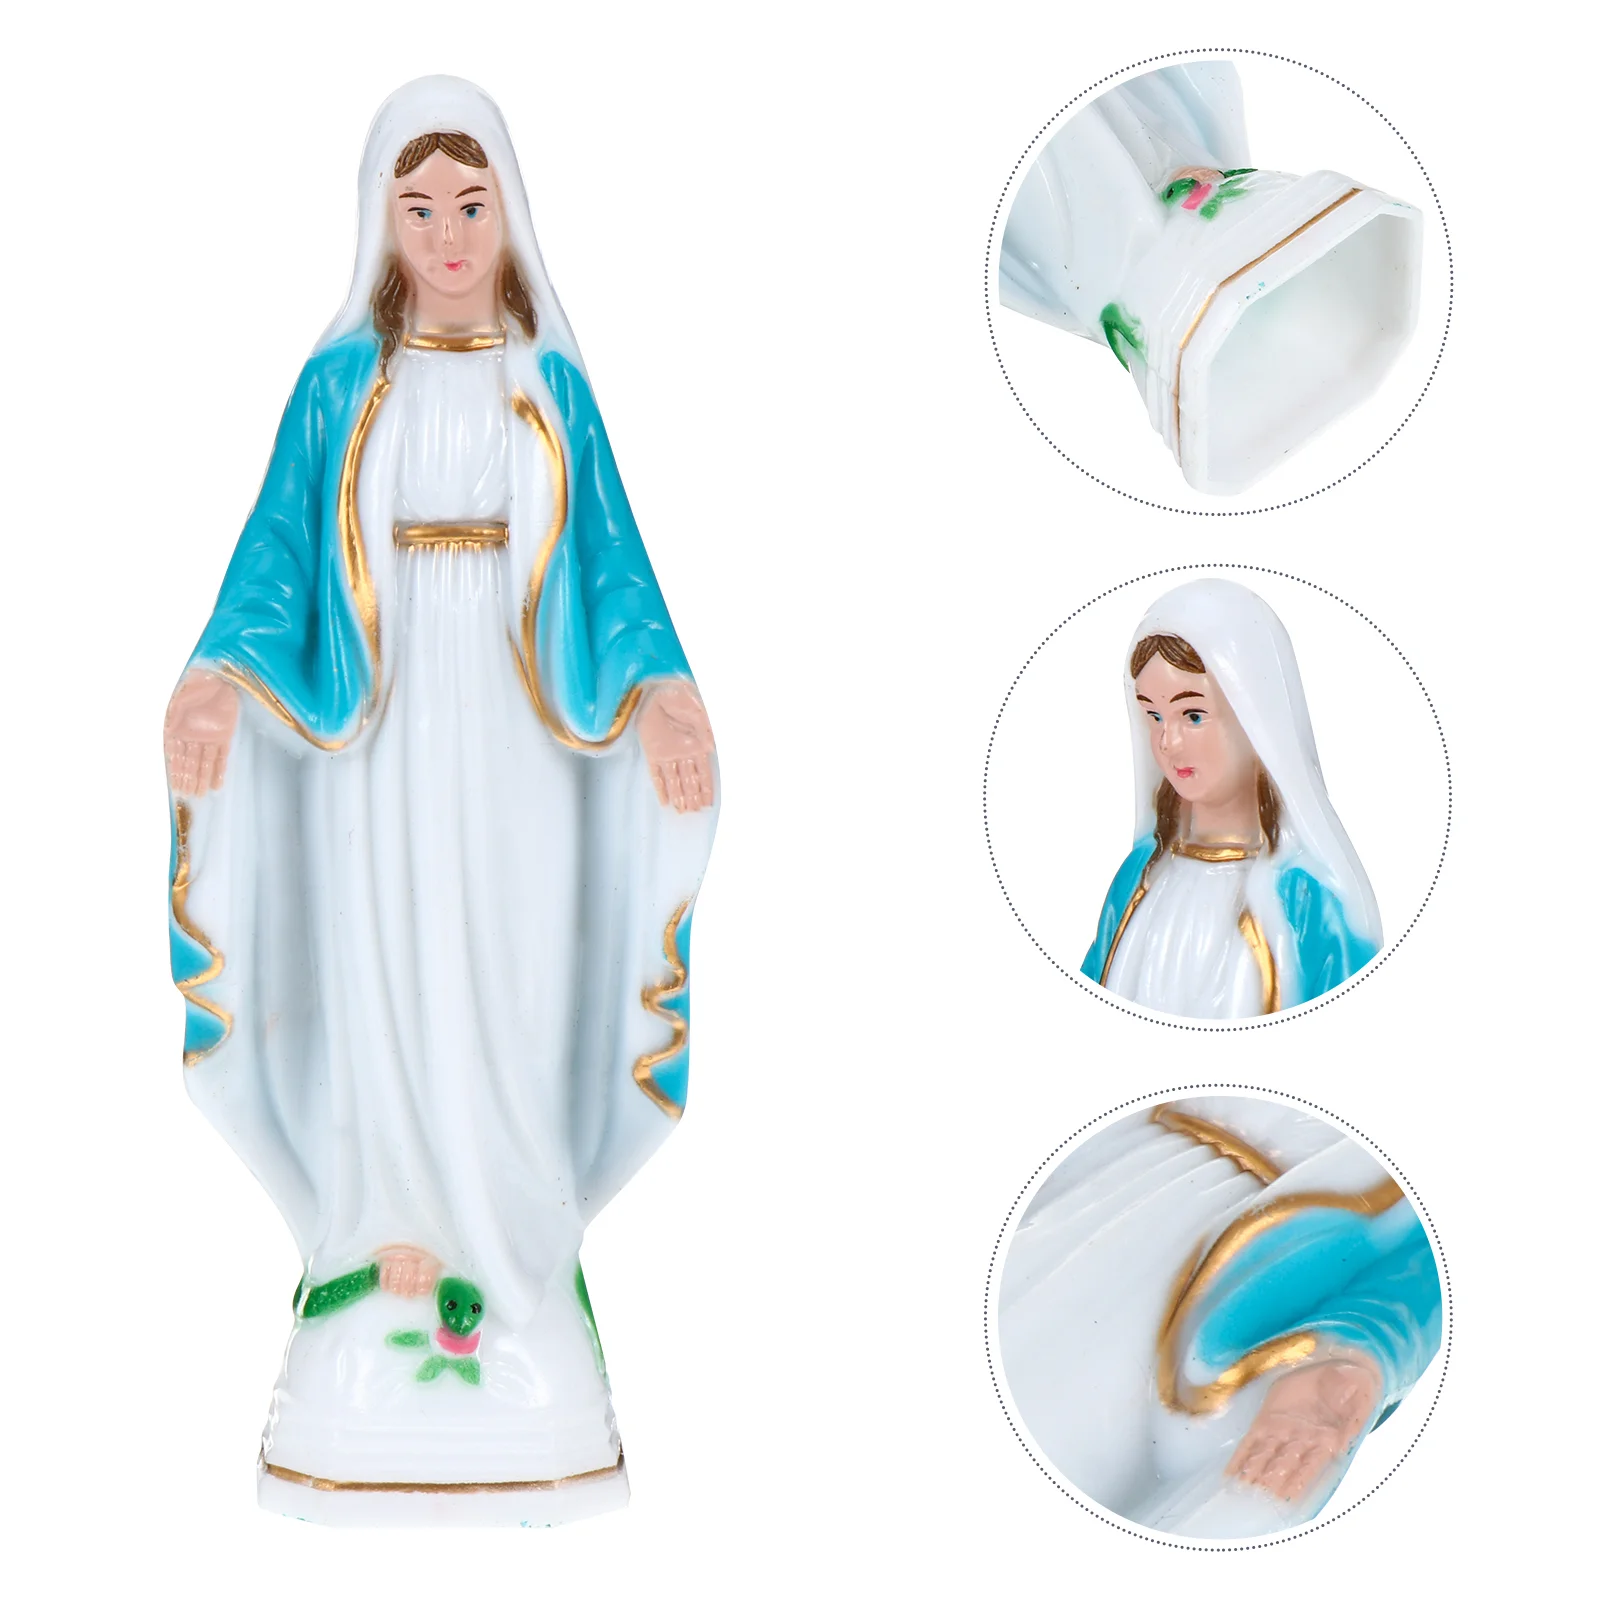 mary statue catholic Mary Decorative Figurine Catholic Blessed Mother Mary Statues Catholic Religious luminous catholic statue